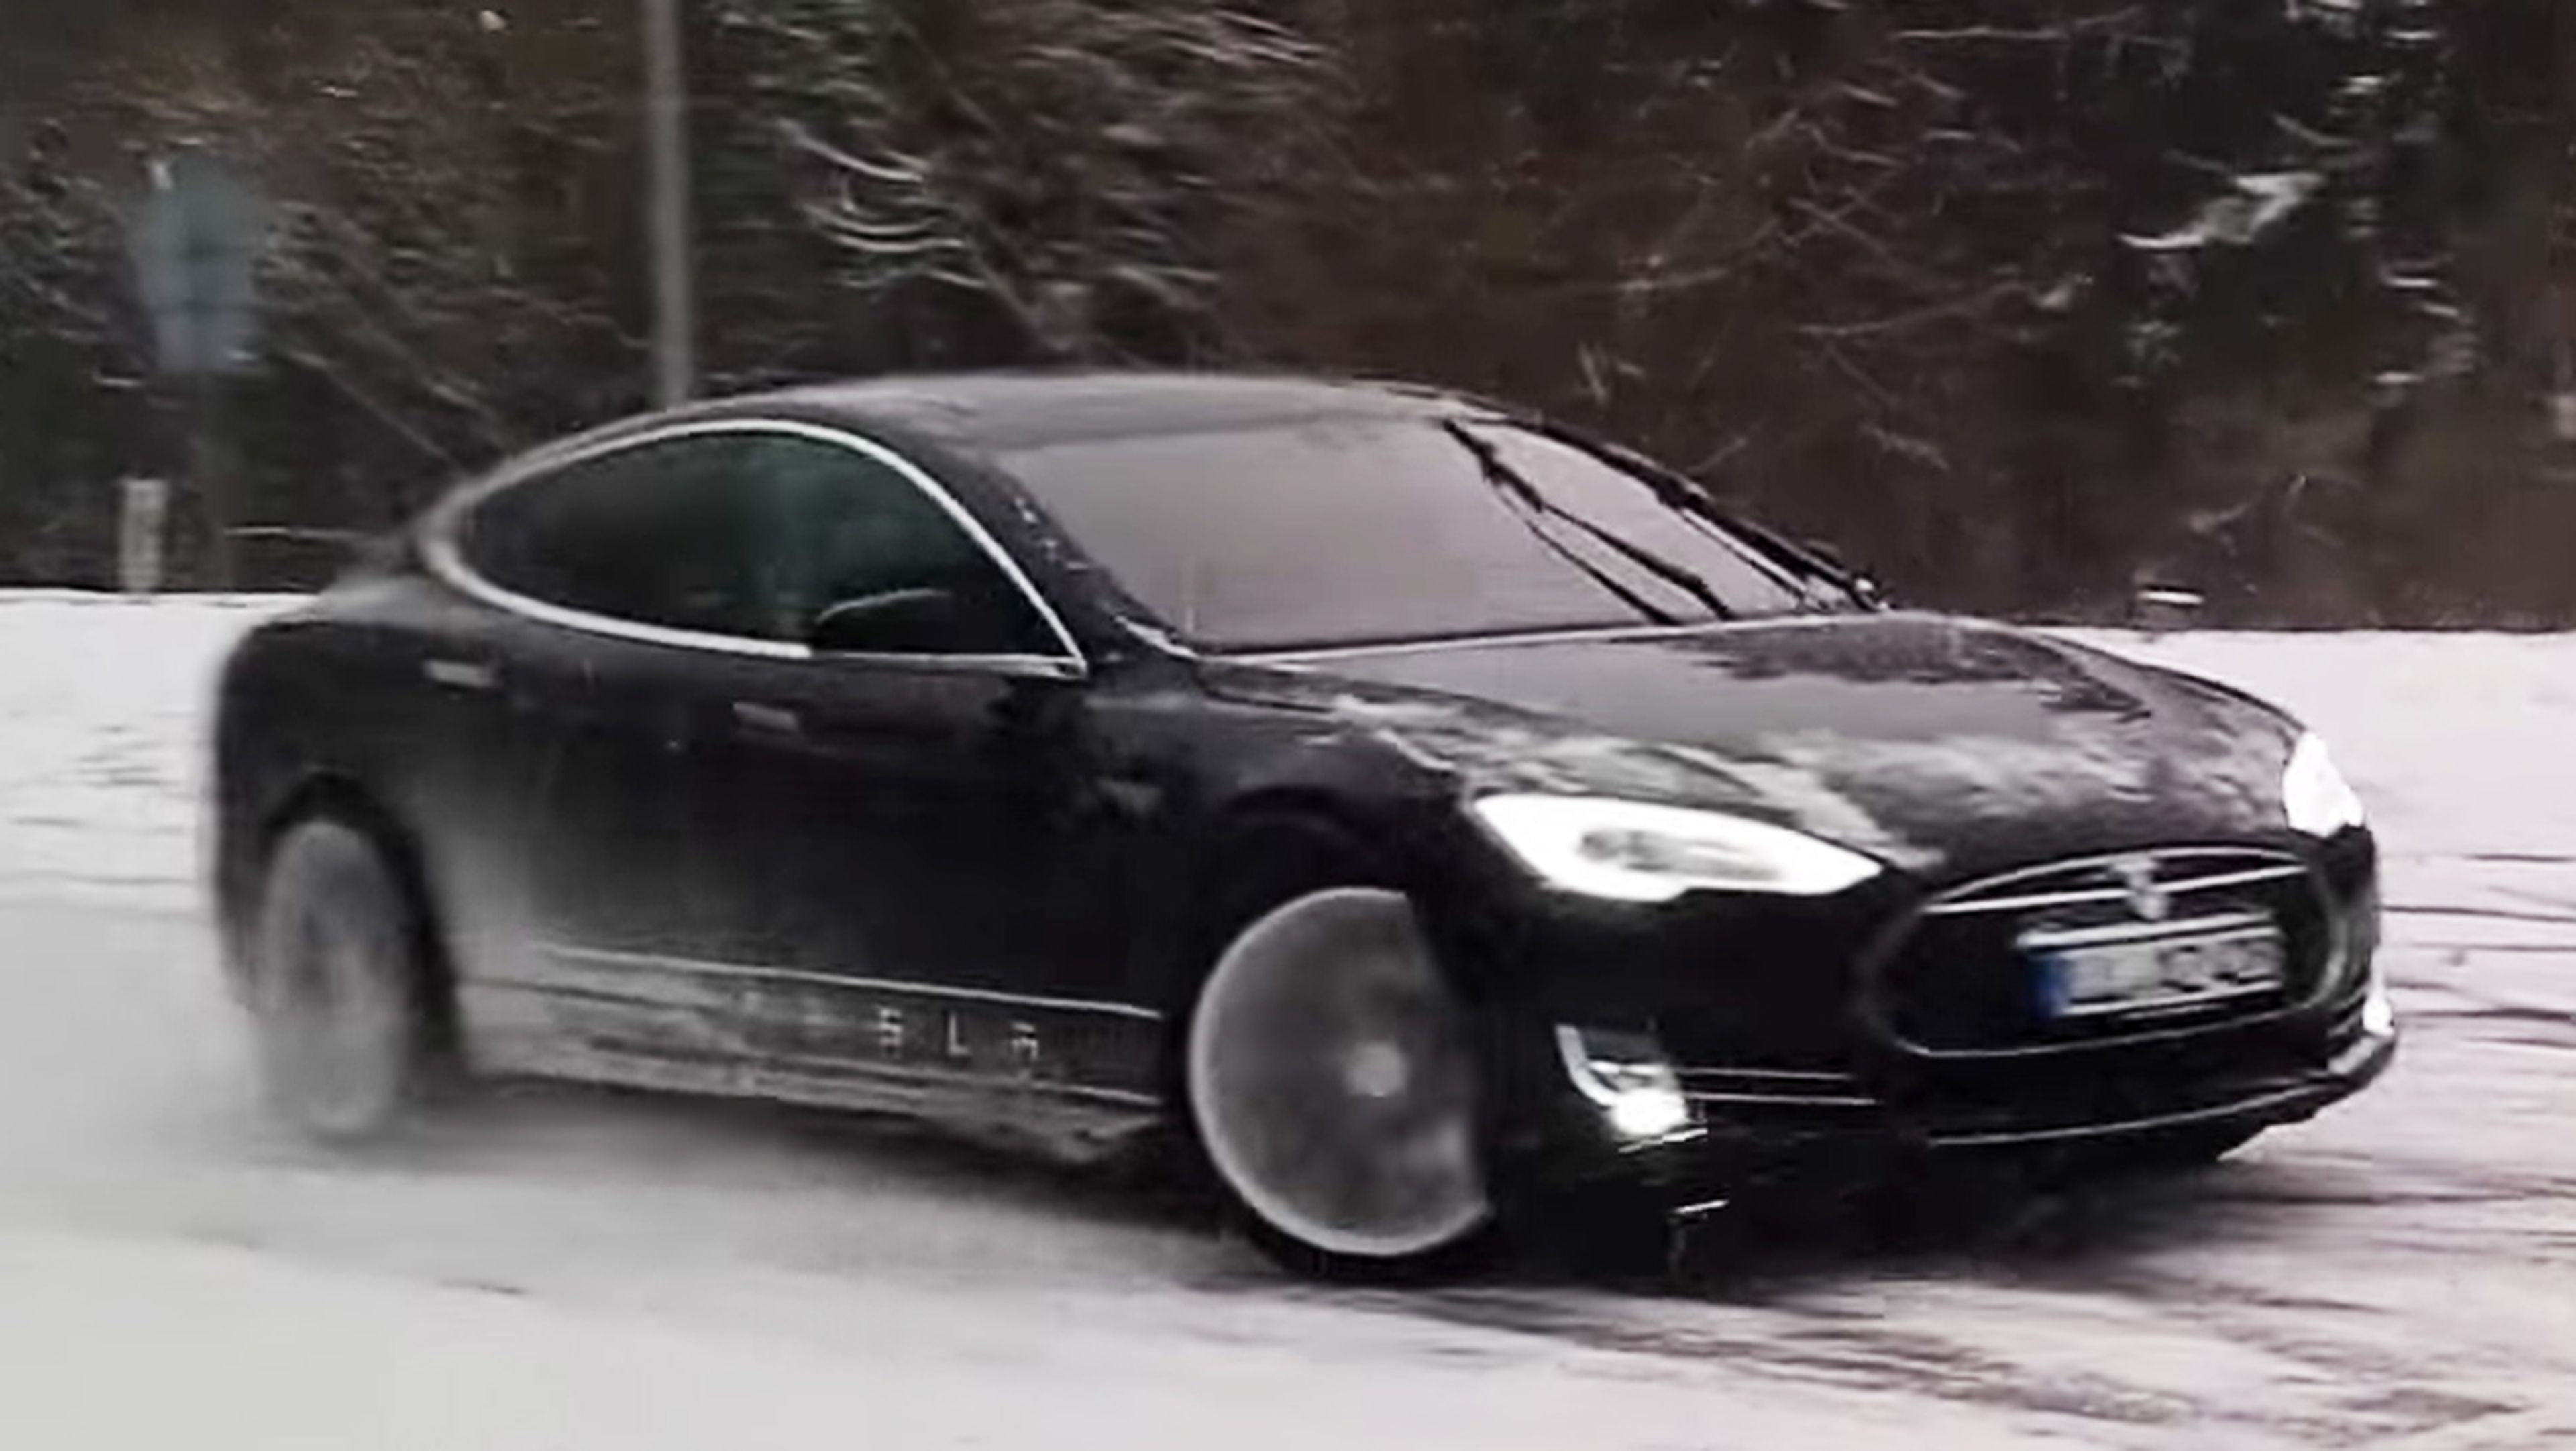 Un Tesla haciendo trompos en la nieve a toda velocidad